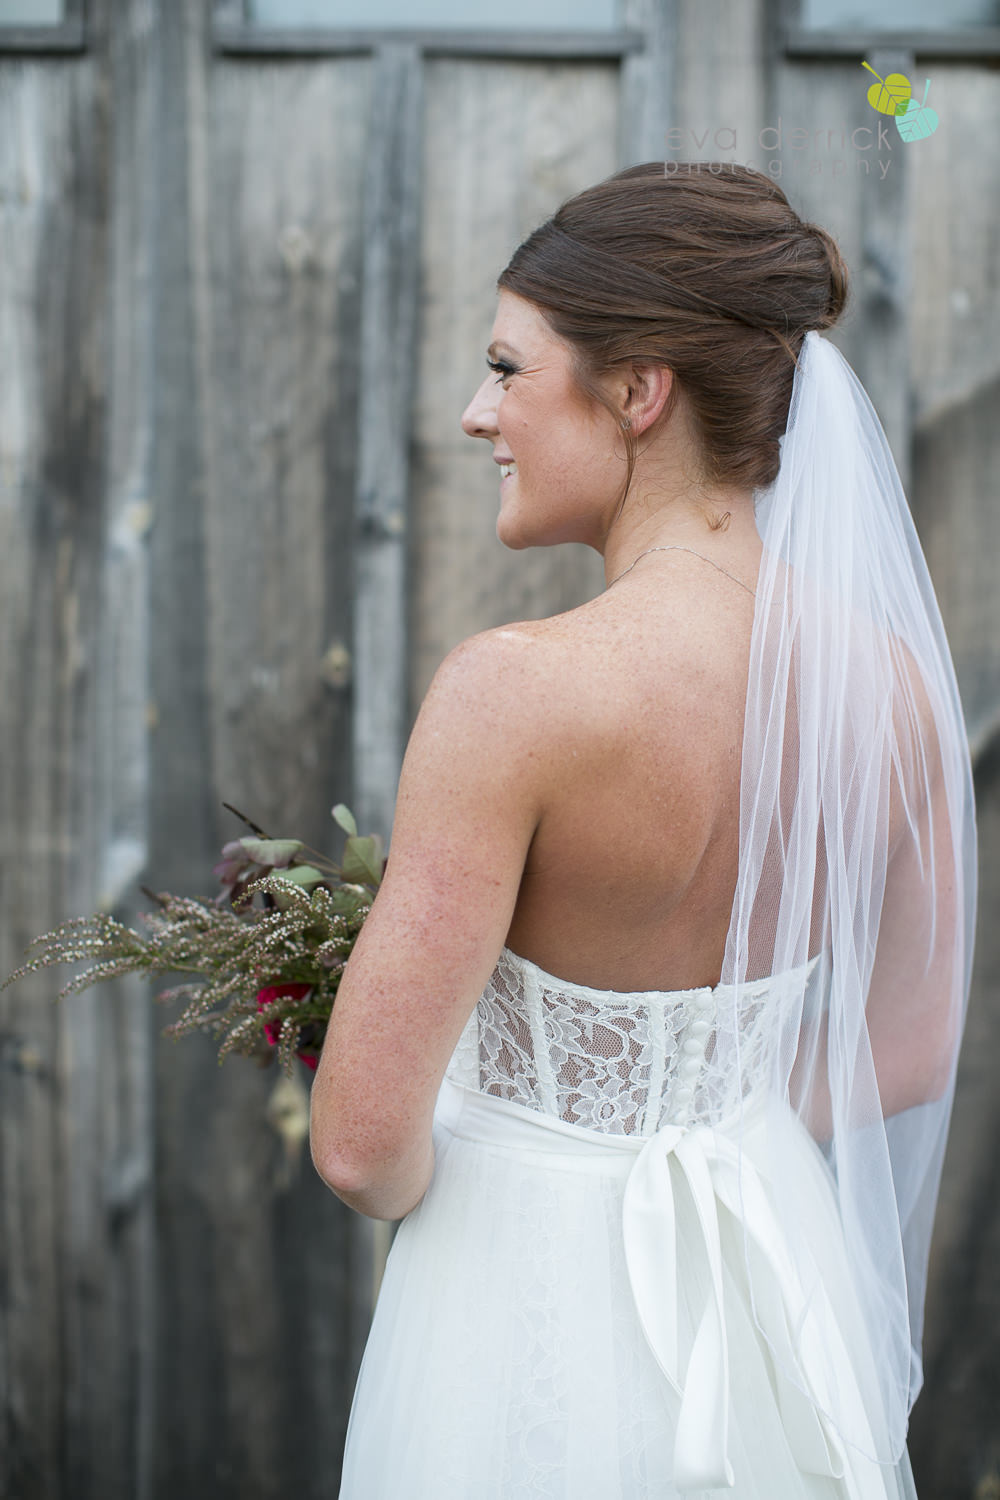 Hamilton-Wedding-Photographer-Anne-an-Co-Niagara-Weddings-Niagara-Elopement-photography-by-Eva-Derrick-Photography-029.JPG